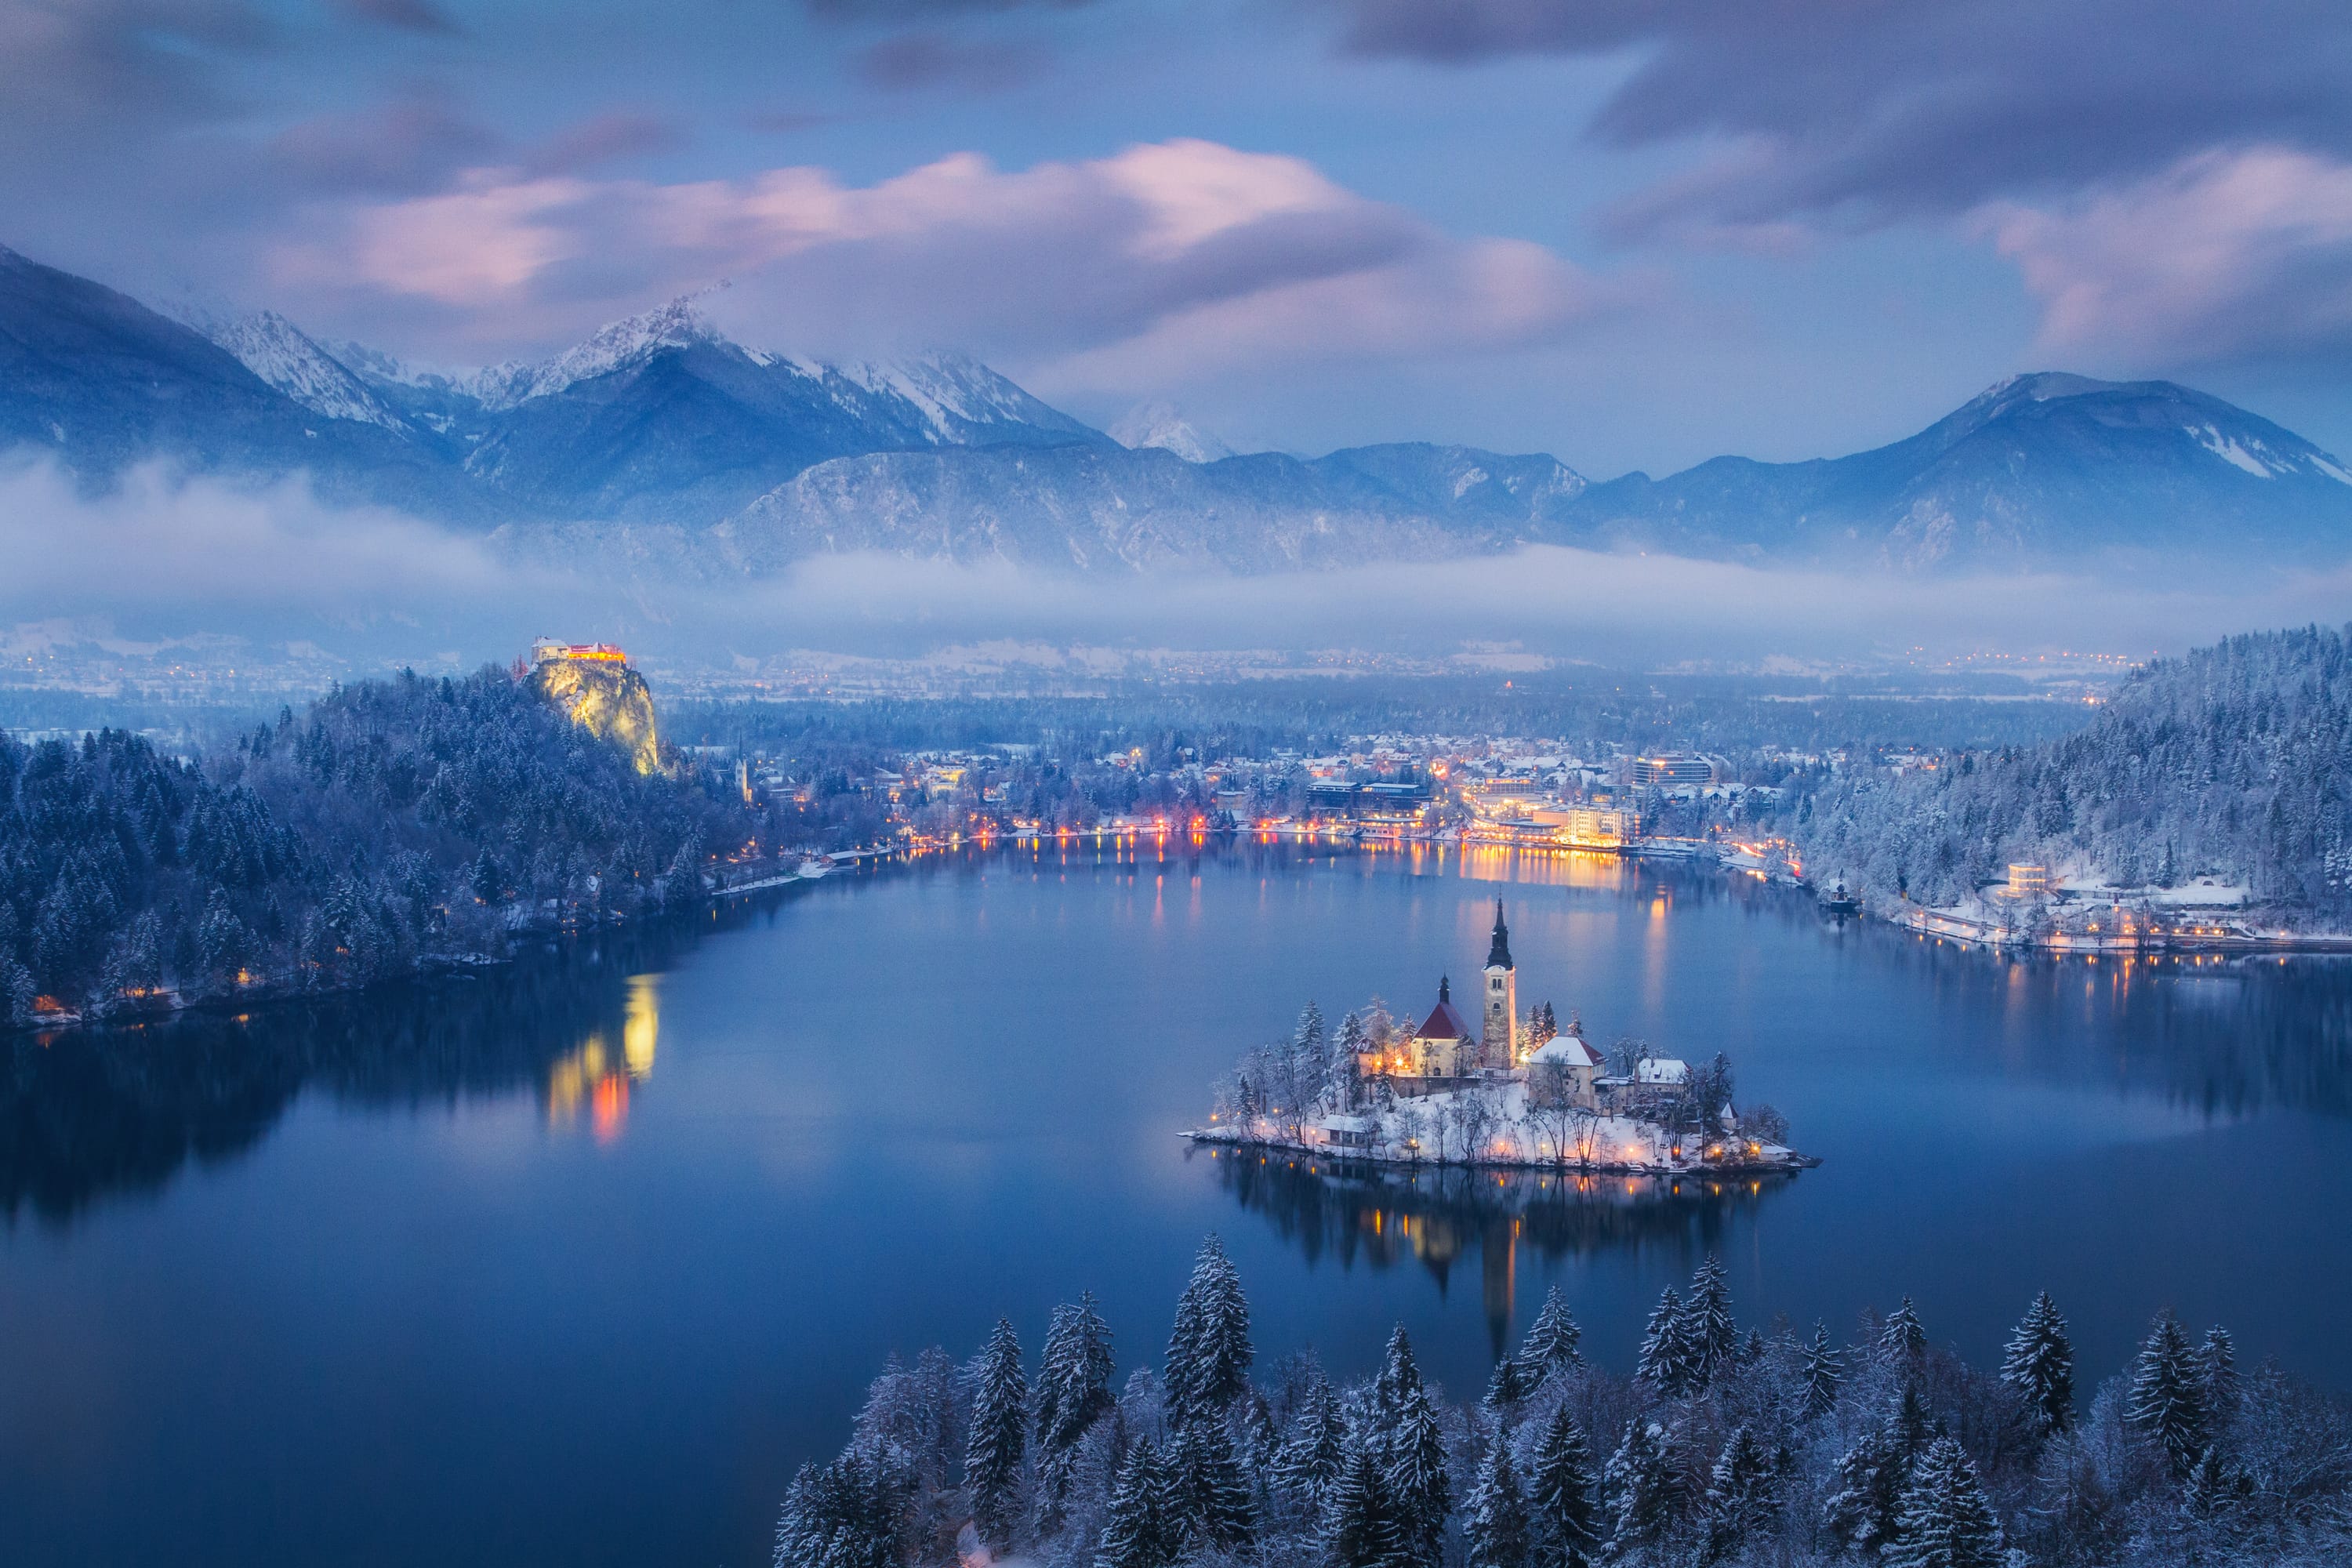 Bledsko jezero najfotogeničnije je jezero na svijetu (Lonely Planet)